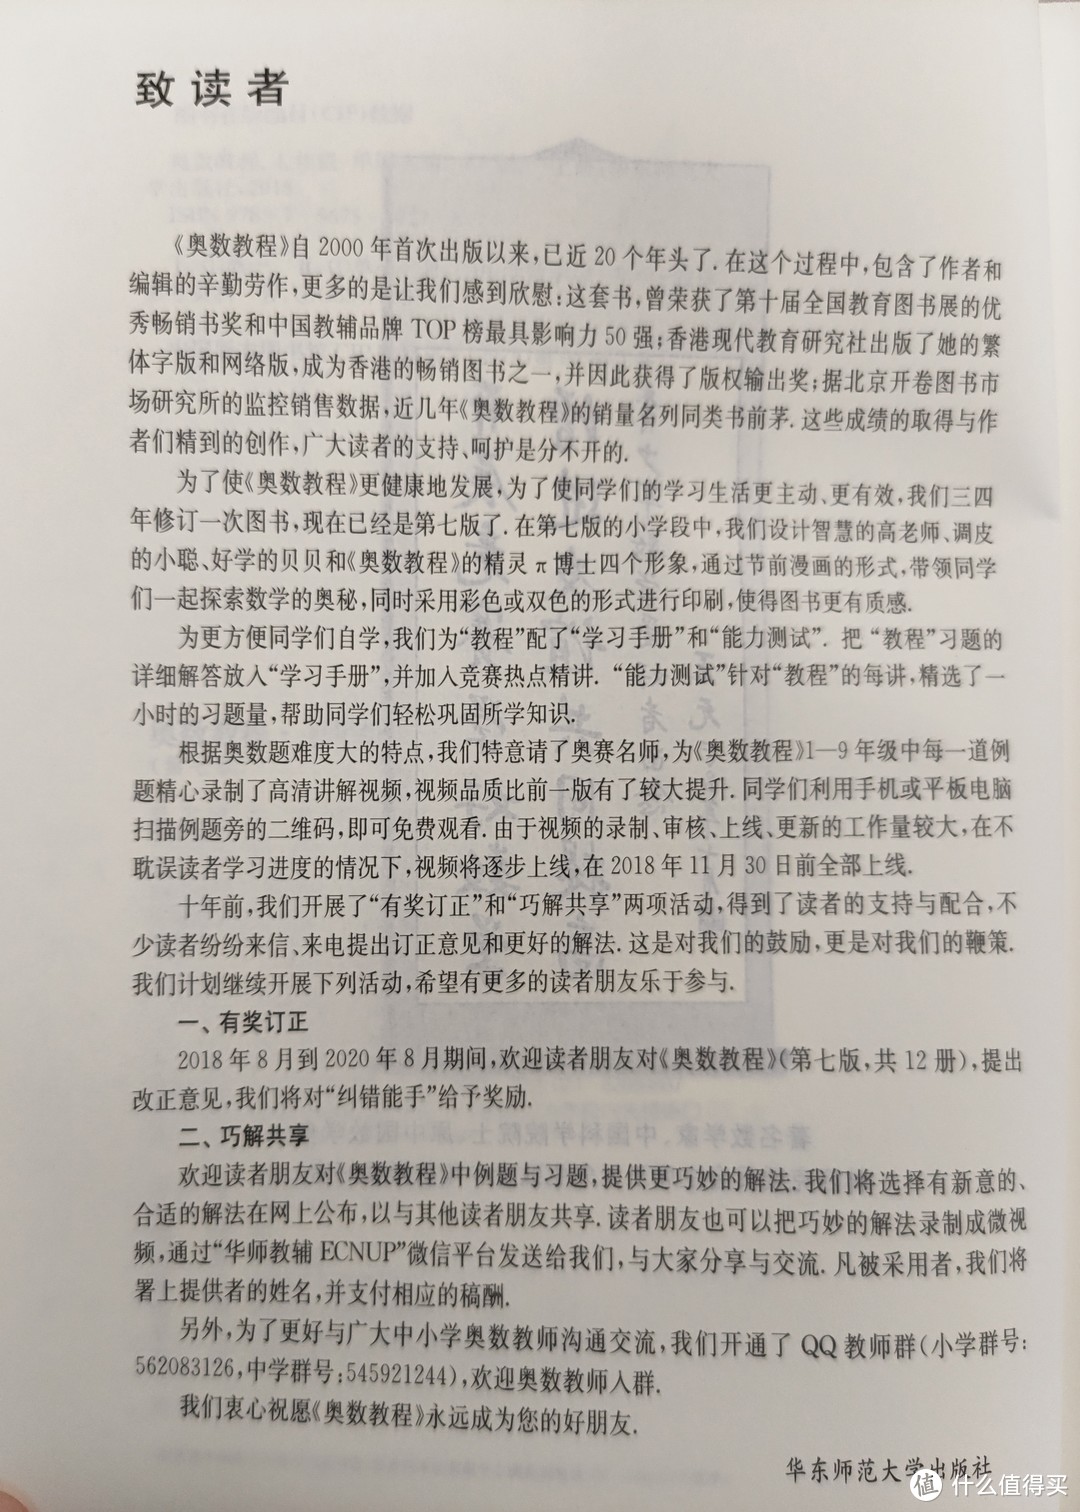 华东师范大学出版社经典蓝皮《奥数教程》初中三册合晒